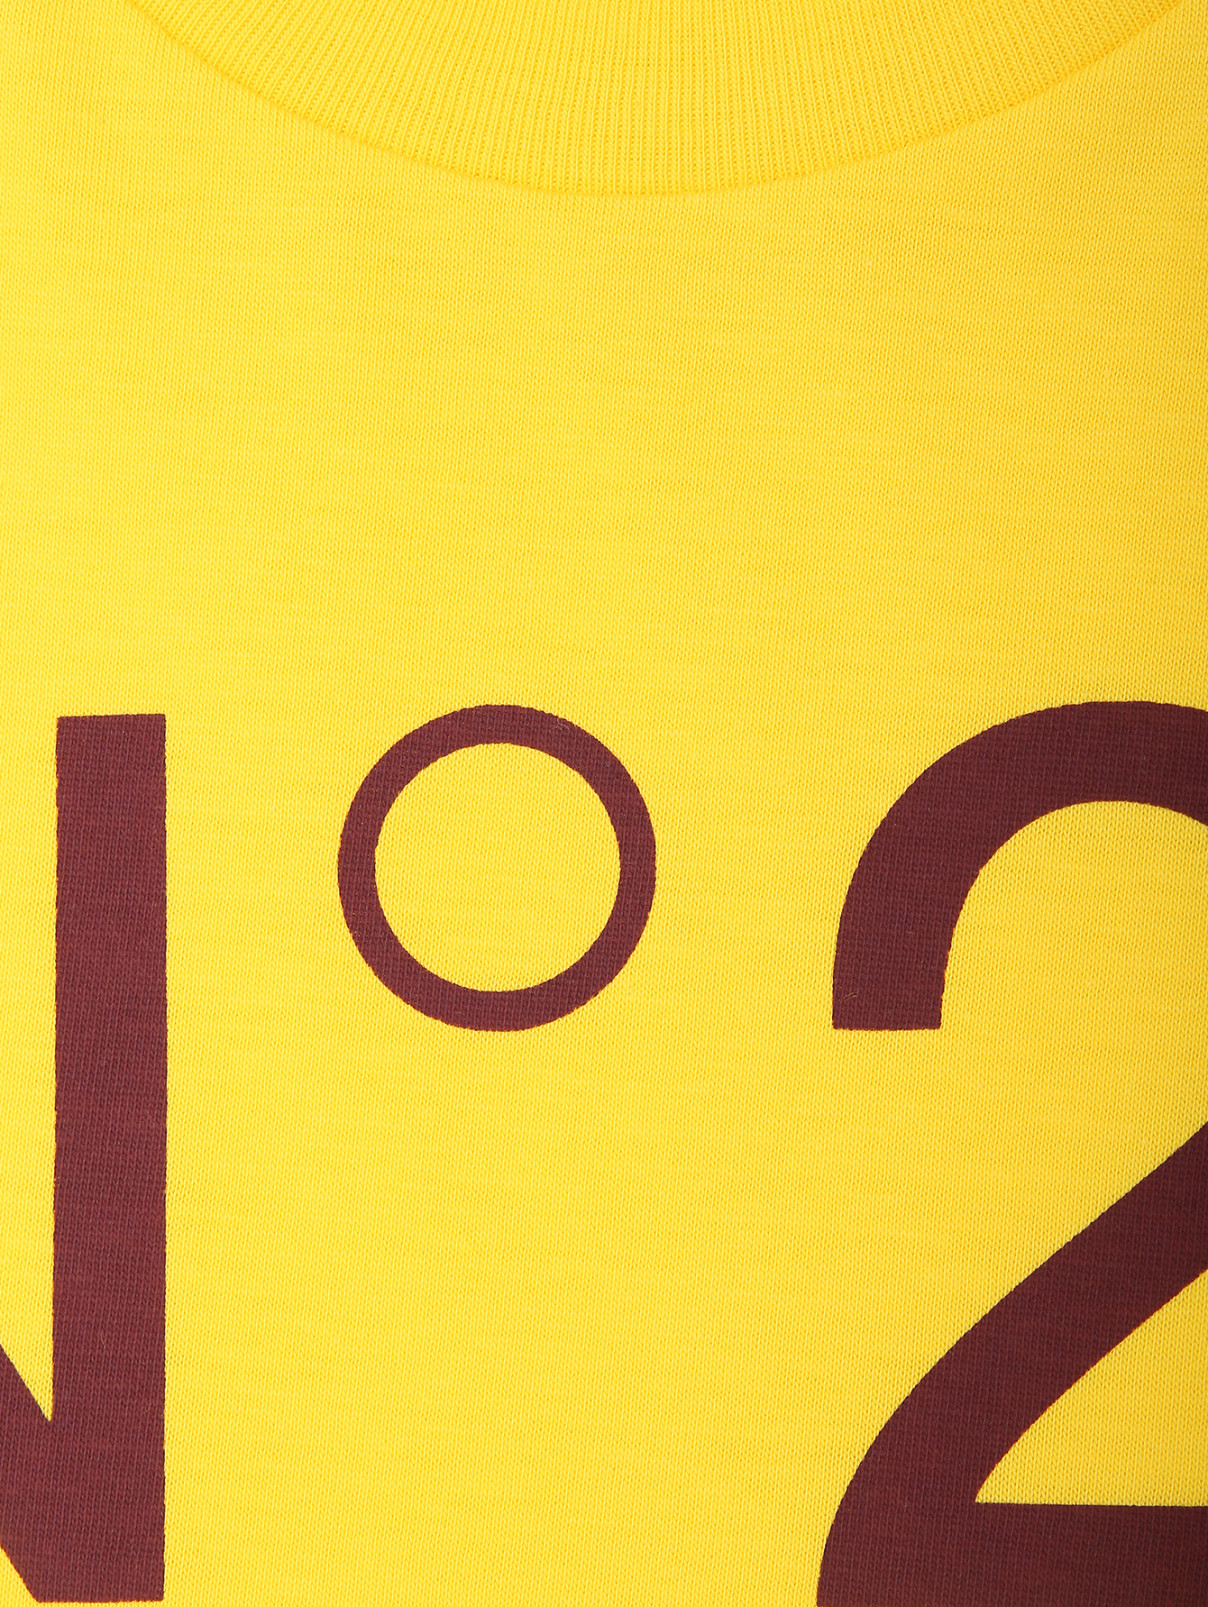 Футболка с принтом из хлопка N21  –  Деталь  – Цвет:  Желтый